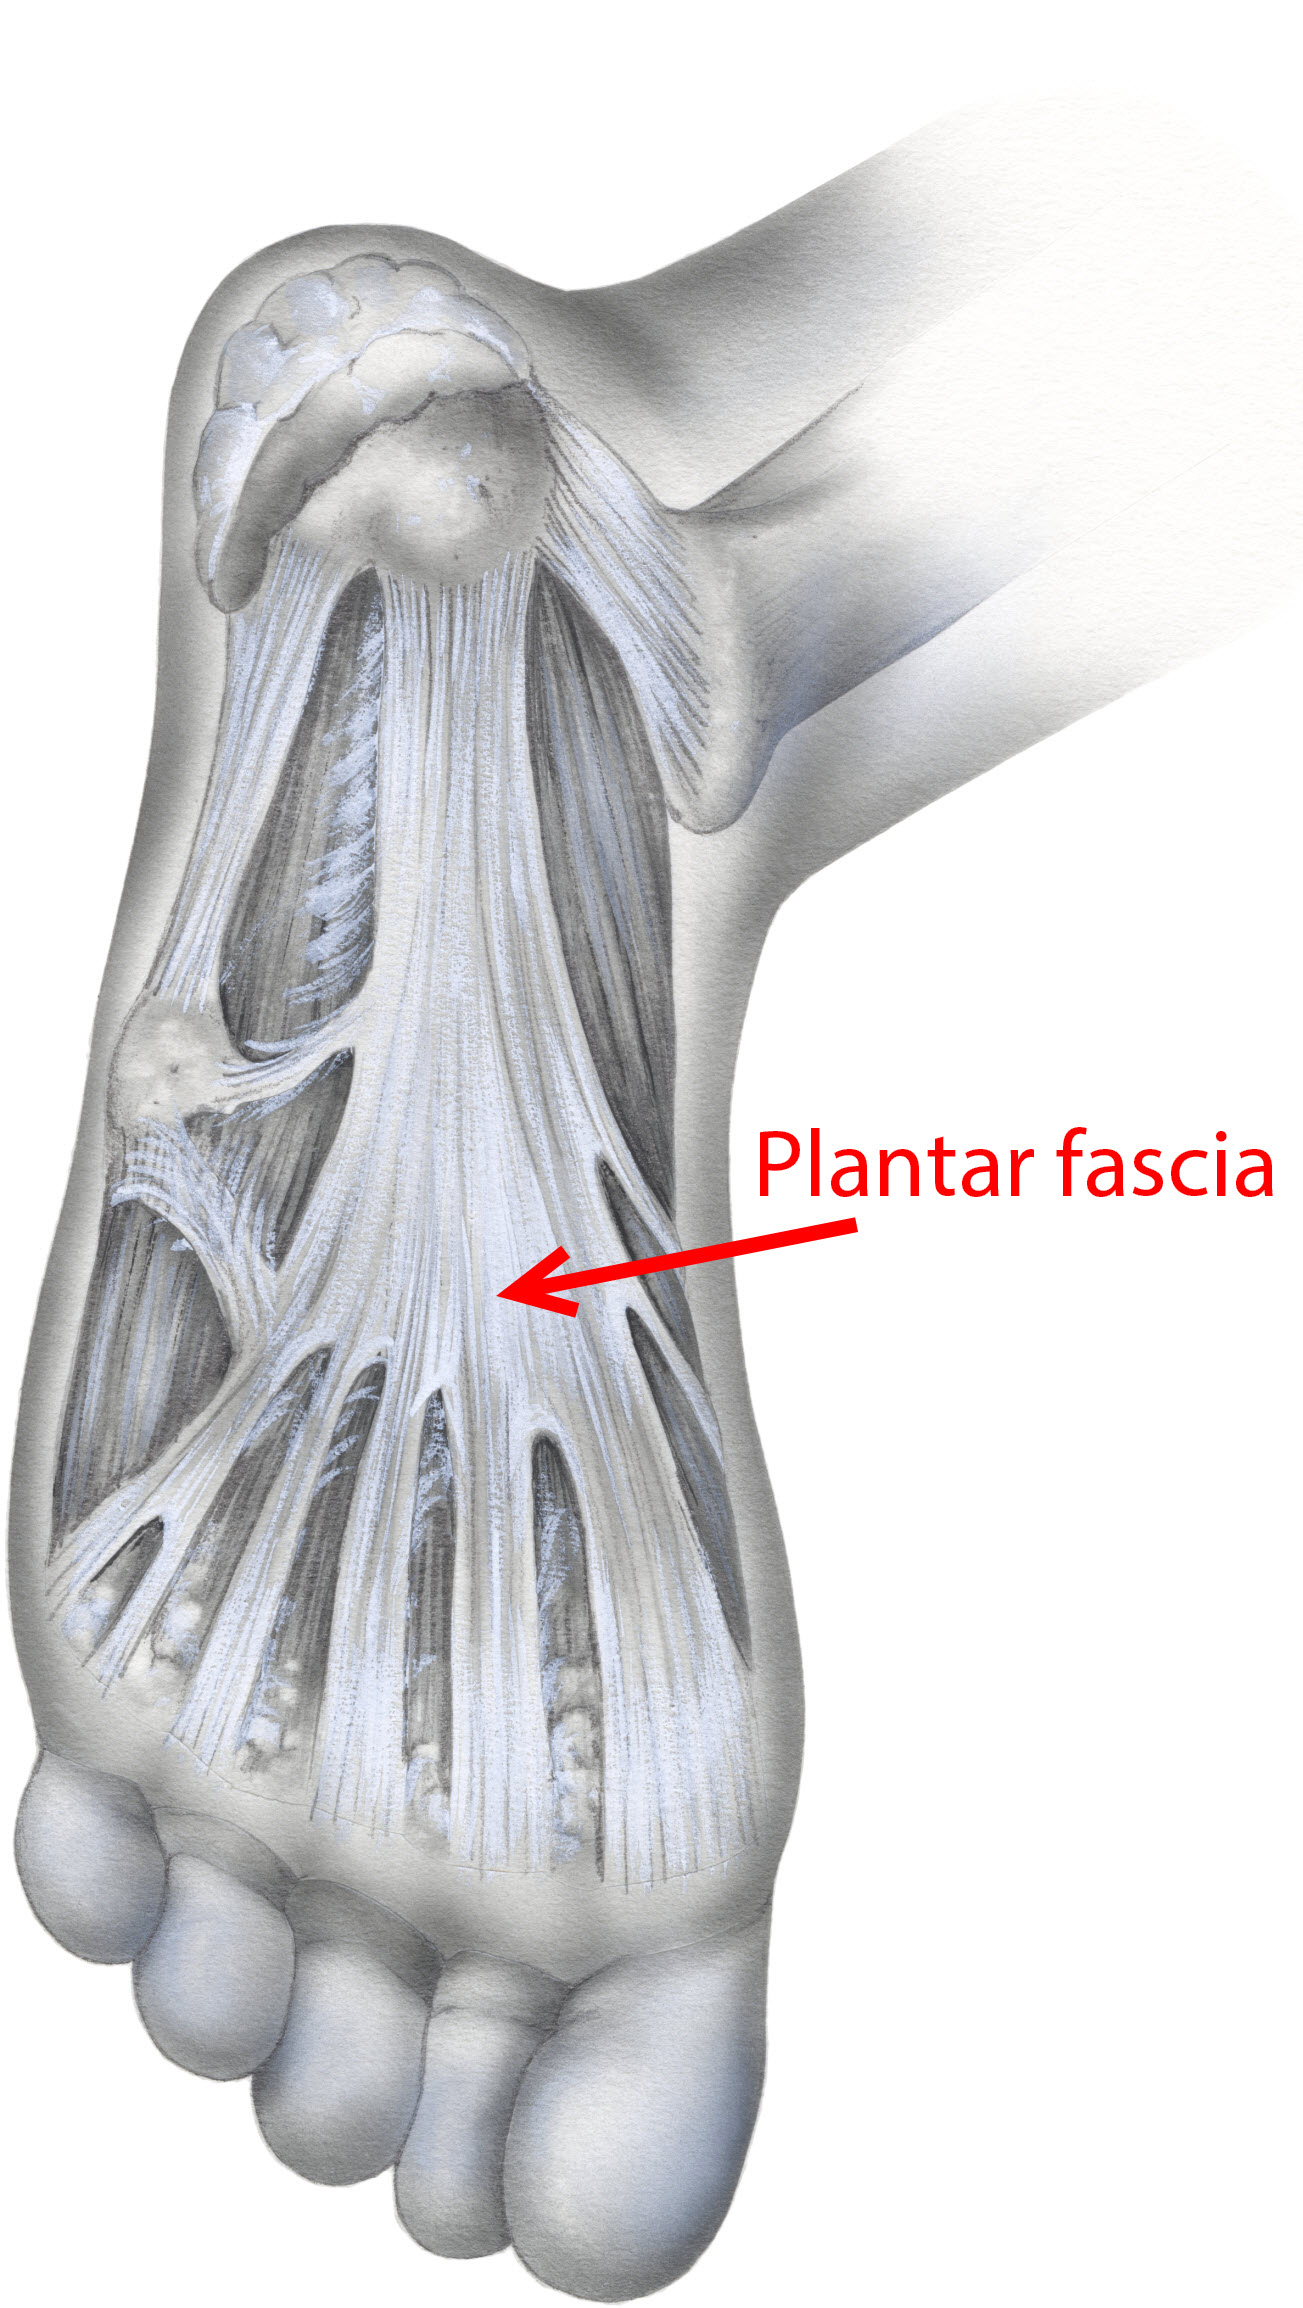 Easing the Heel Pain of Plantar Fasciitis